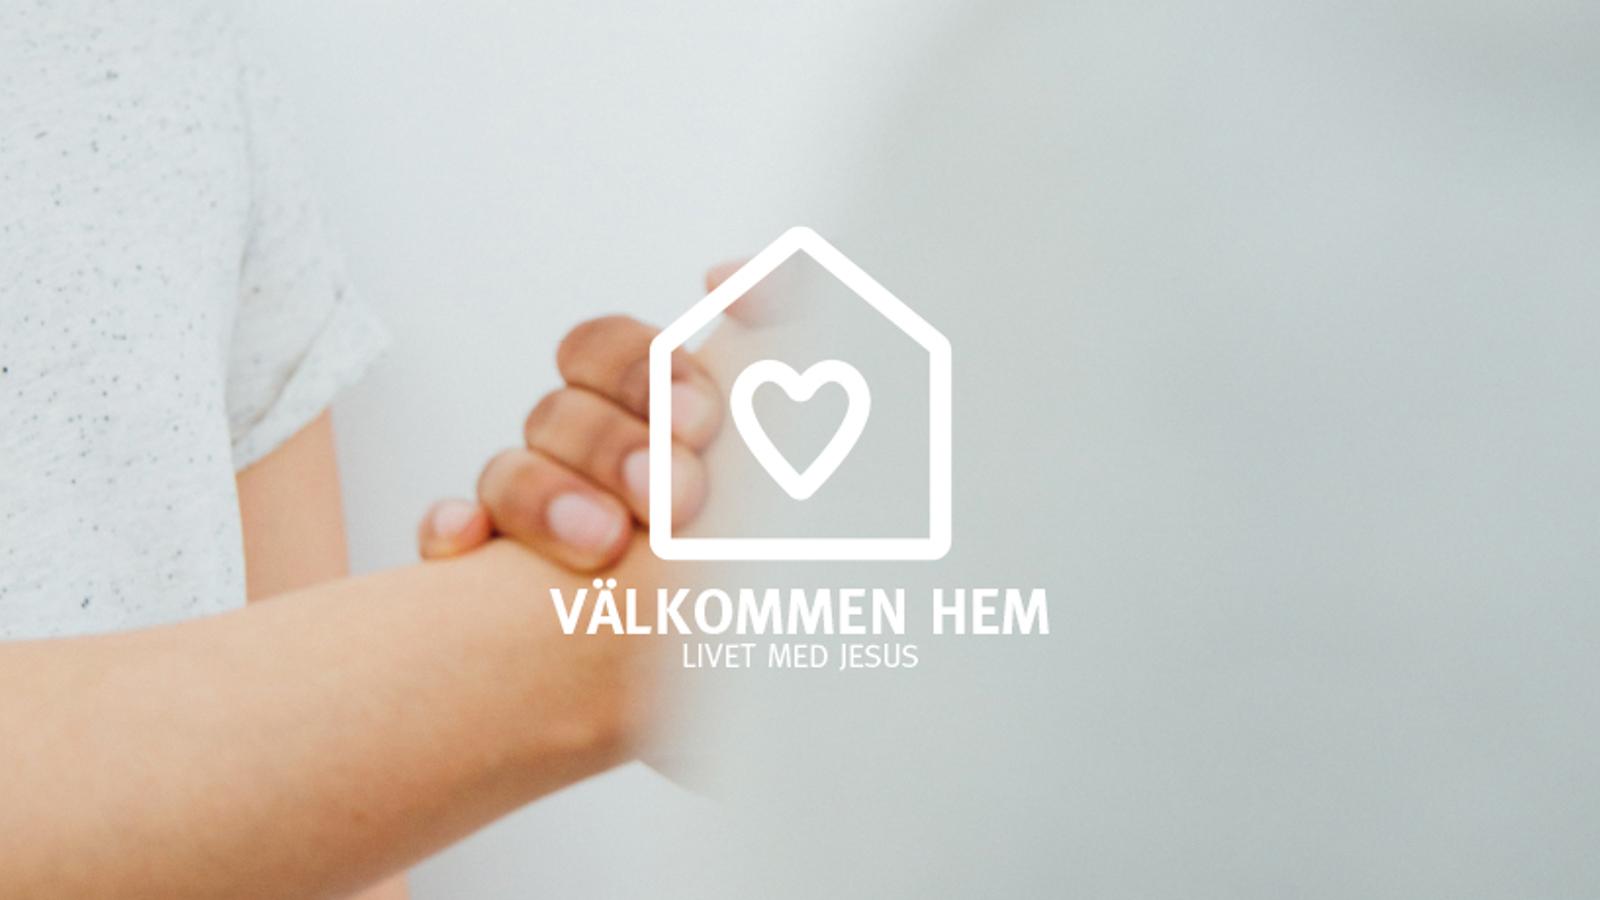 Två knutna händer. På bilden är det en logotyp i form av ett hus med ett hjärta på, med texten "Välkommen hem. Livet med Jesus".